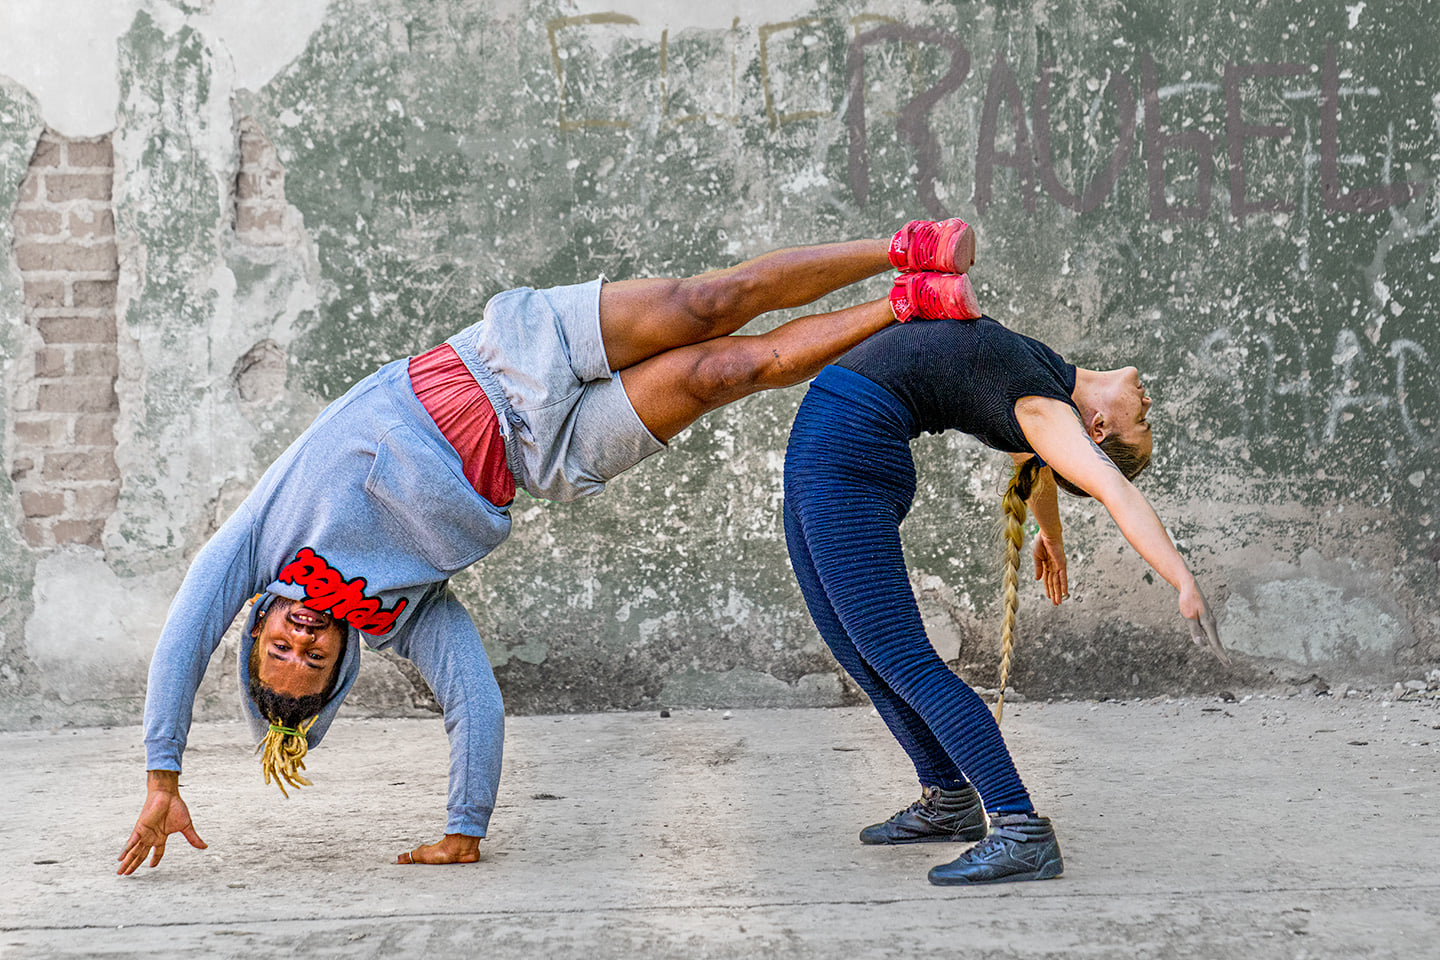 Heute Morgen habe ich das Training einiger hoch professionellen Tänzer in Havanna dokumentiert und viele Bilder von ihnen aufgenommen.